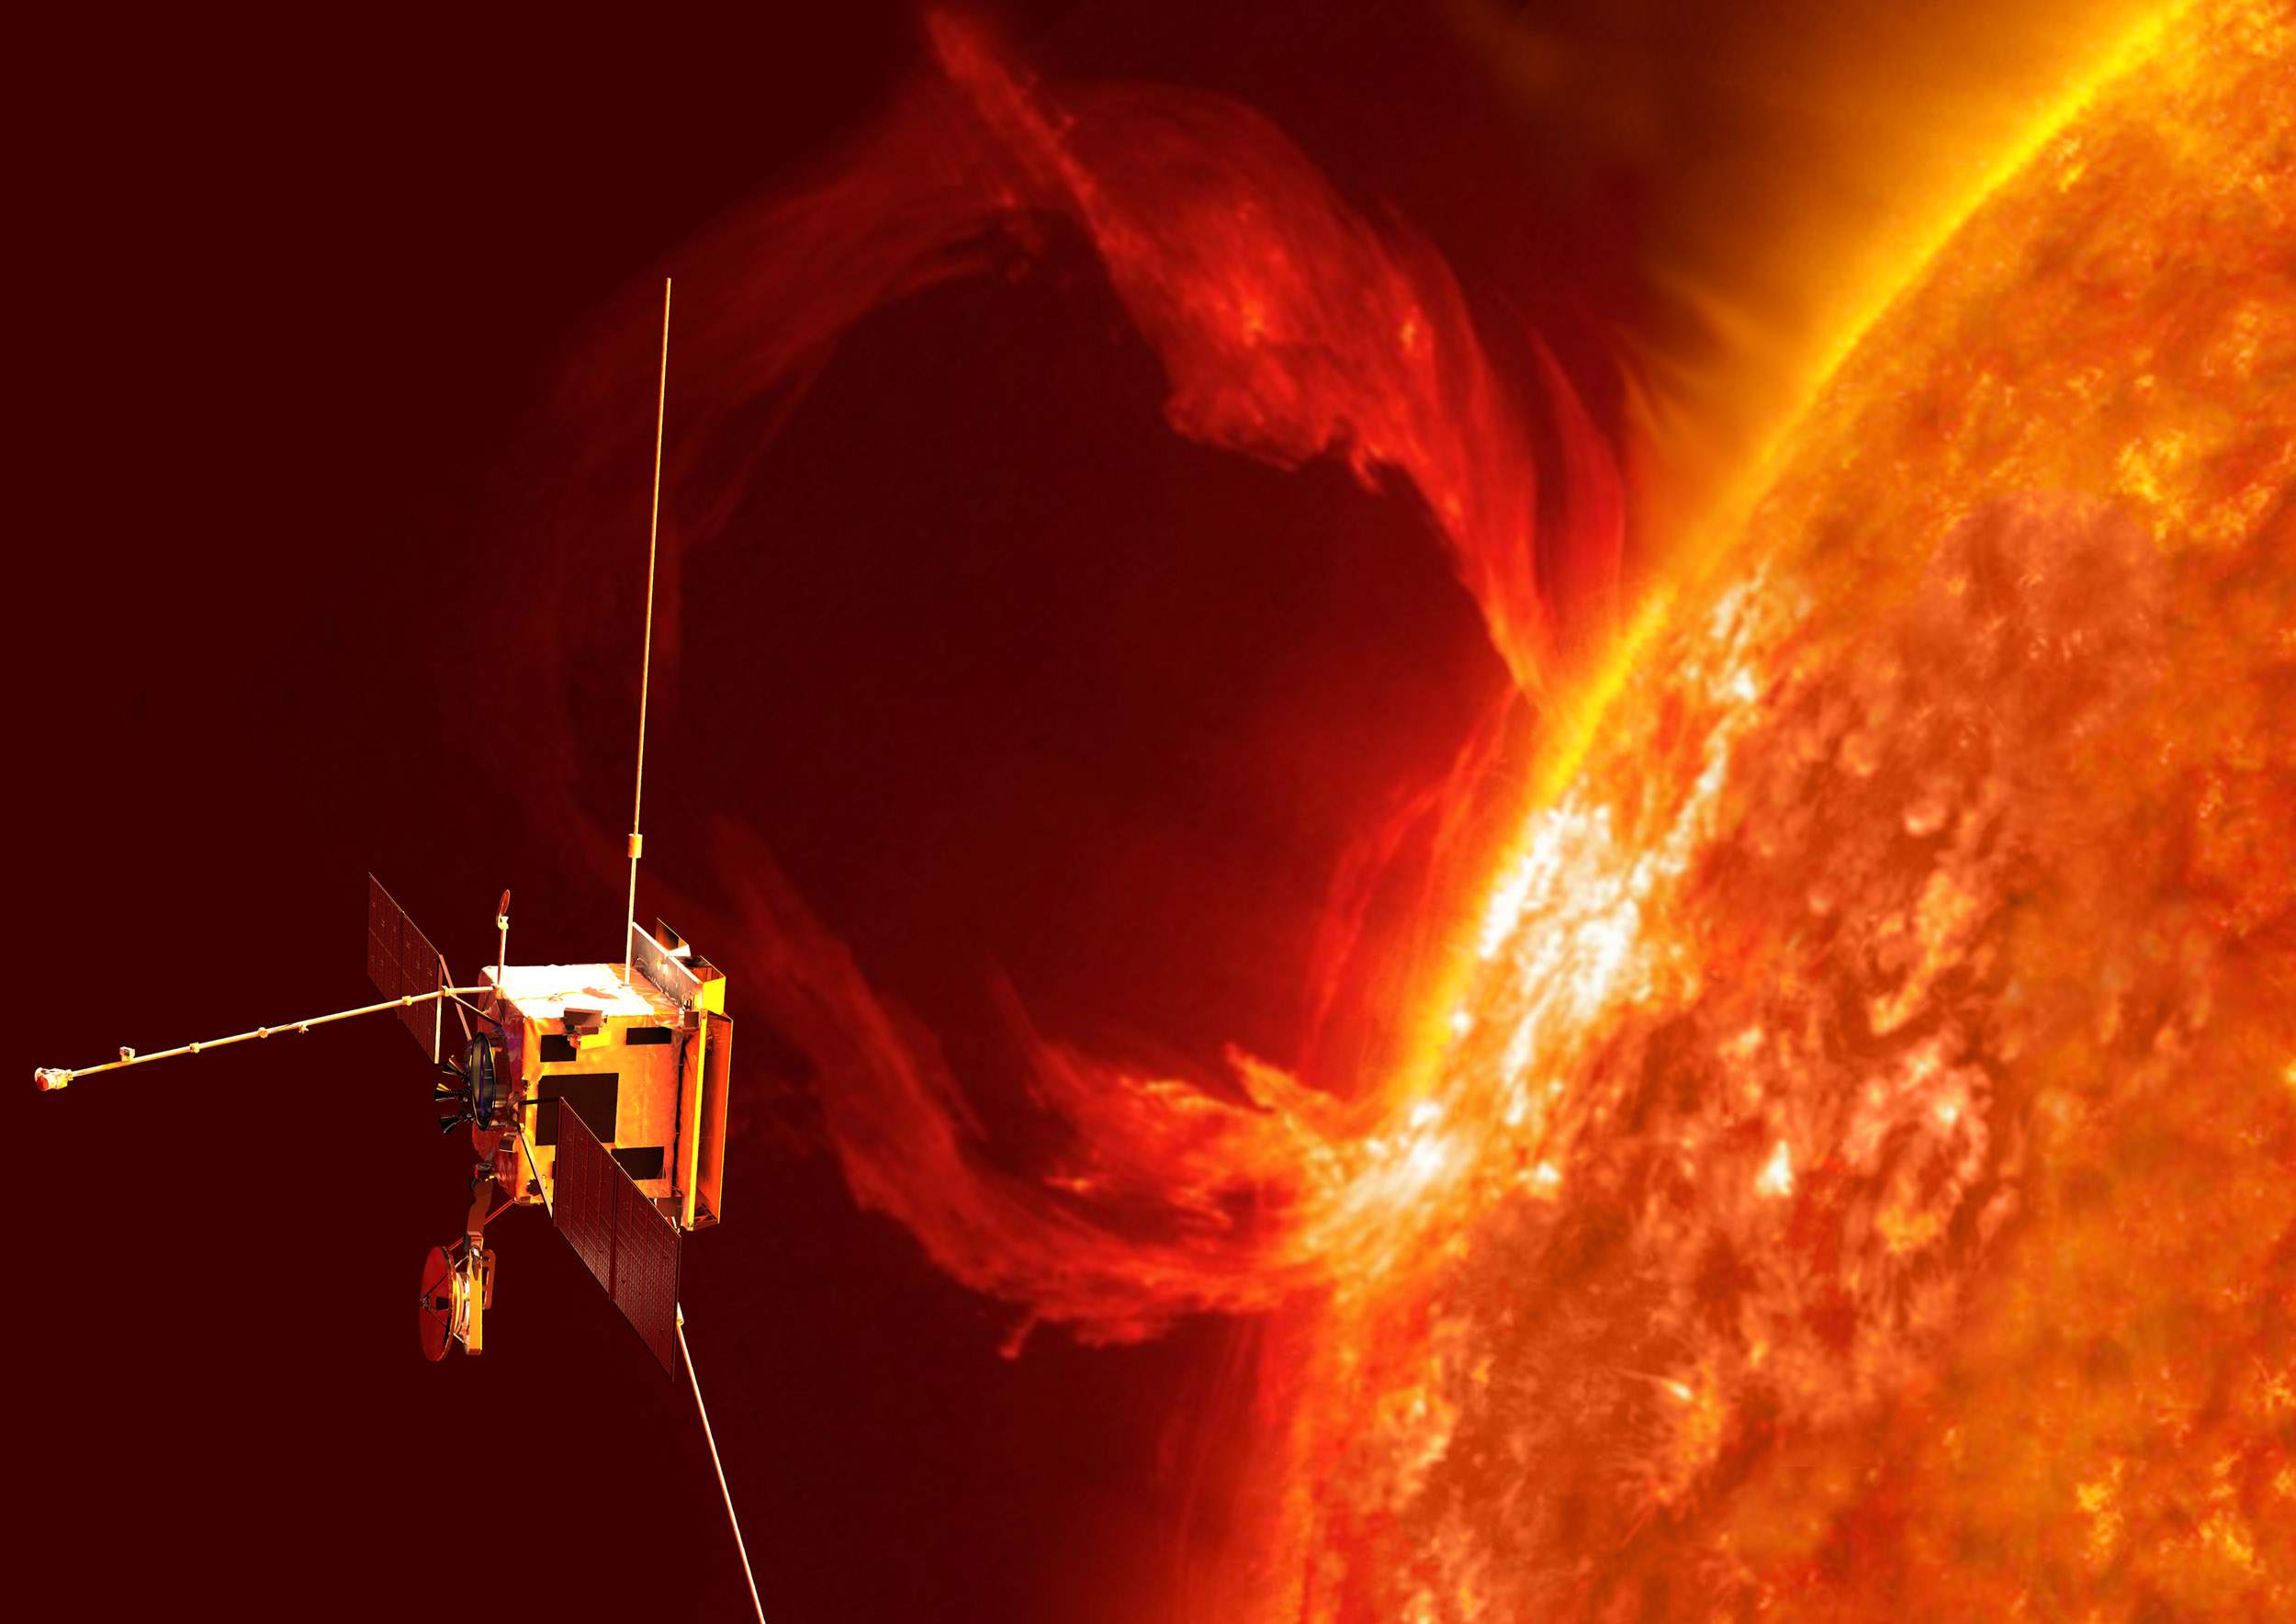 Vue d'artiste de Solar Orbiter. À ce jour, le record de distance à proximité du Soleil est détenu par la sonde Helios (Nasa) qui s’en était approché à 43,5 millions de km en avril 1976. Même si elle le dépasse, celui de Solar Orbiter ne tiendra pas longtemps. Le record sera en effet pulvérisé en 2024 par Solar Probe Plus de la Nasa, laquelle devrait s’en approcher à seulement 6,3 millions de km ! © ESA, AOES 